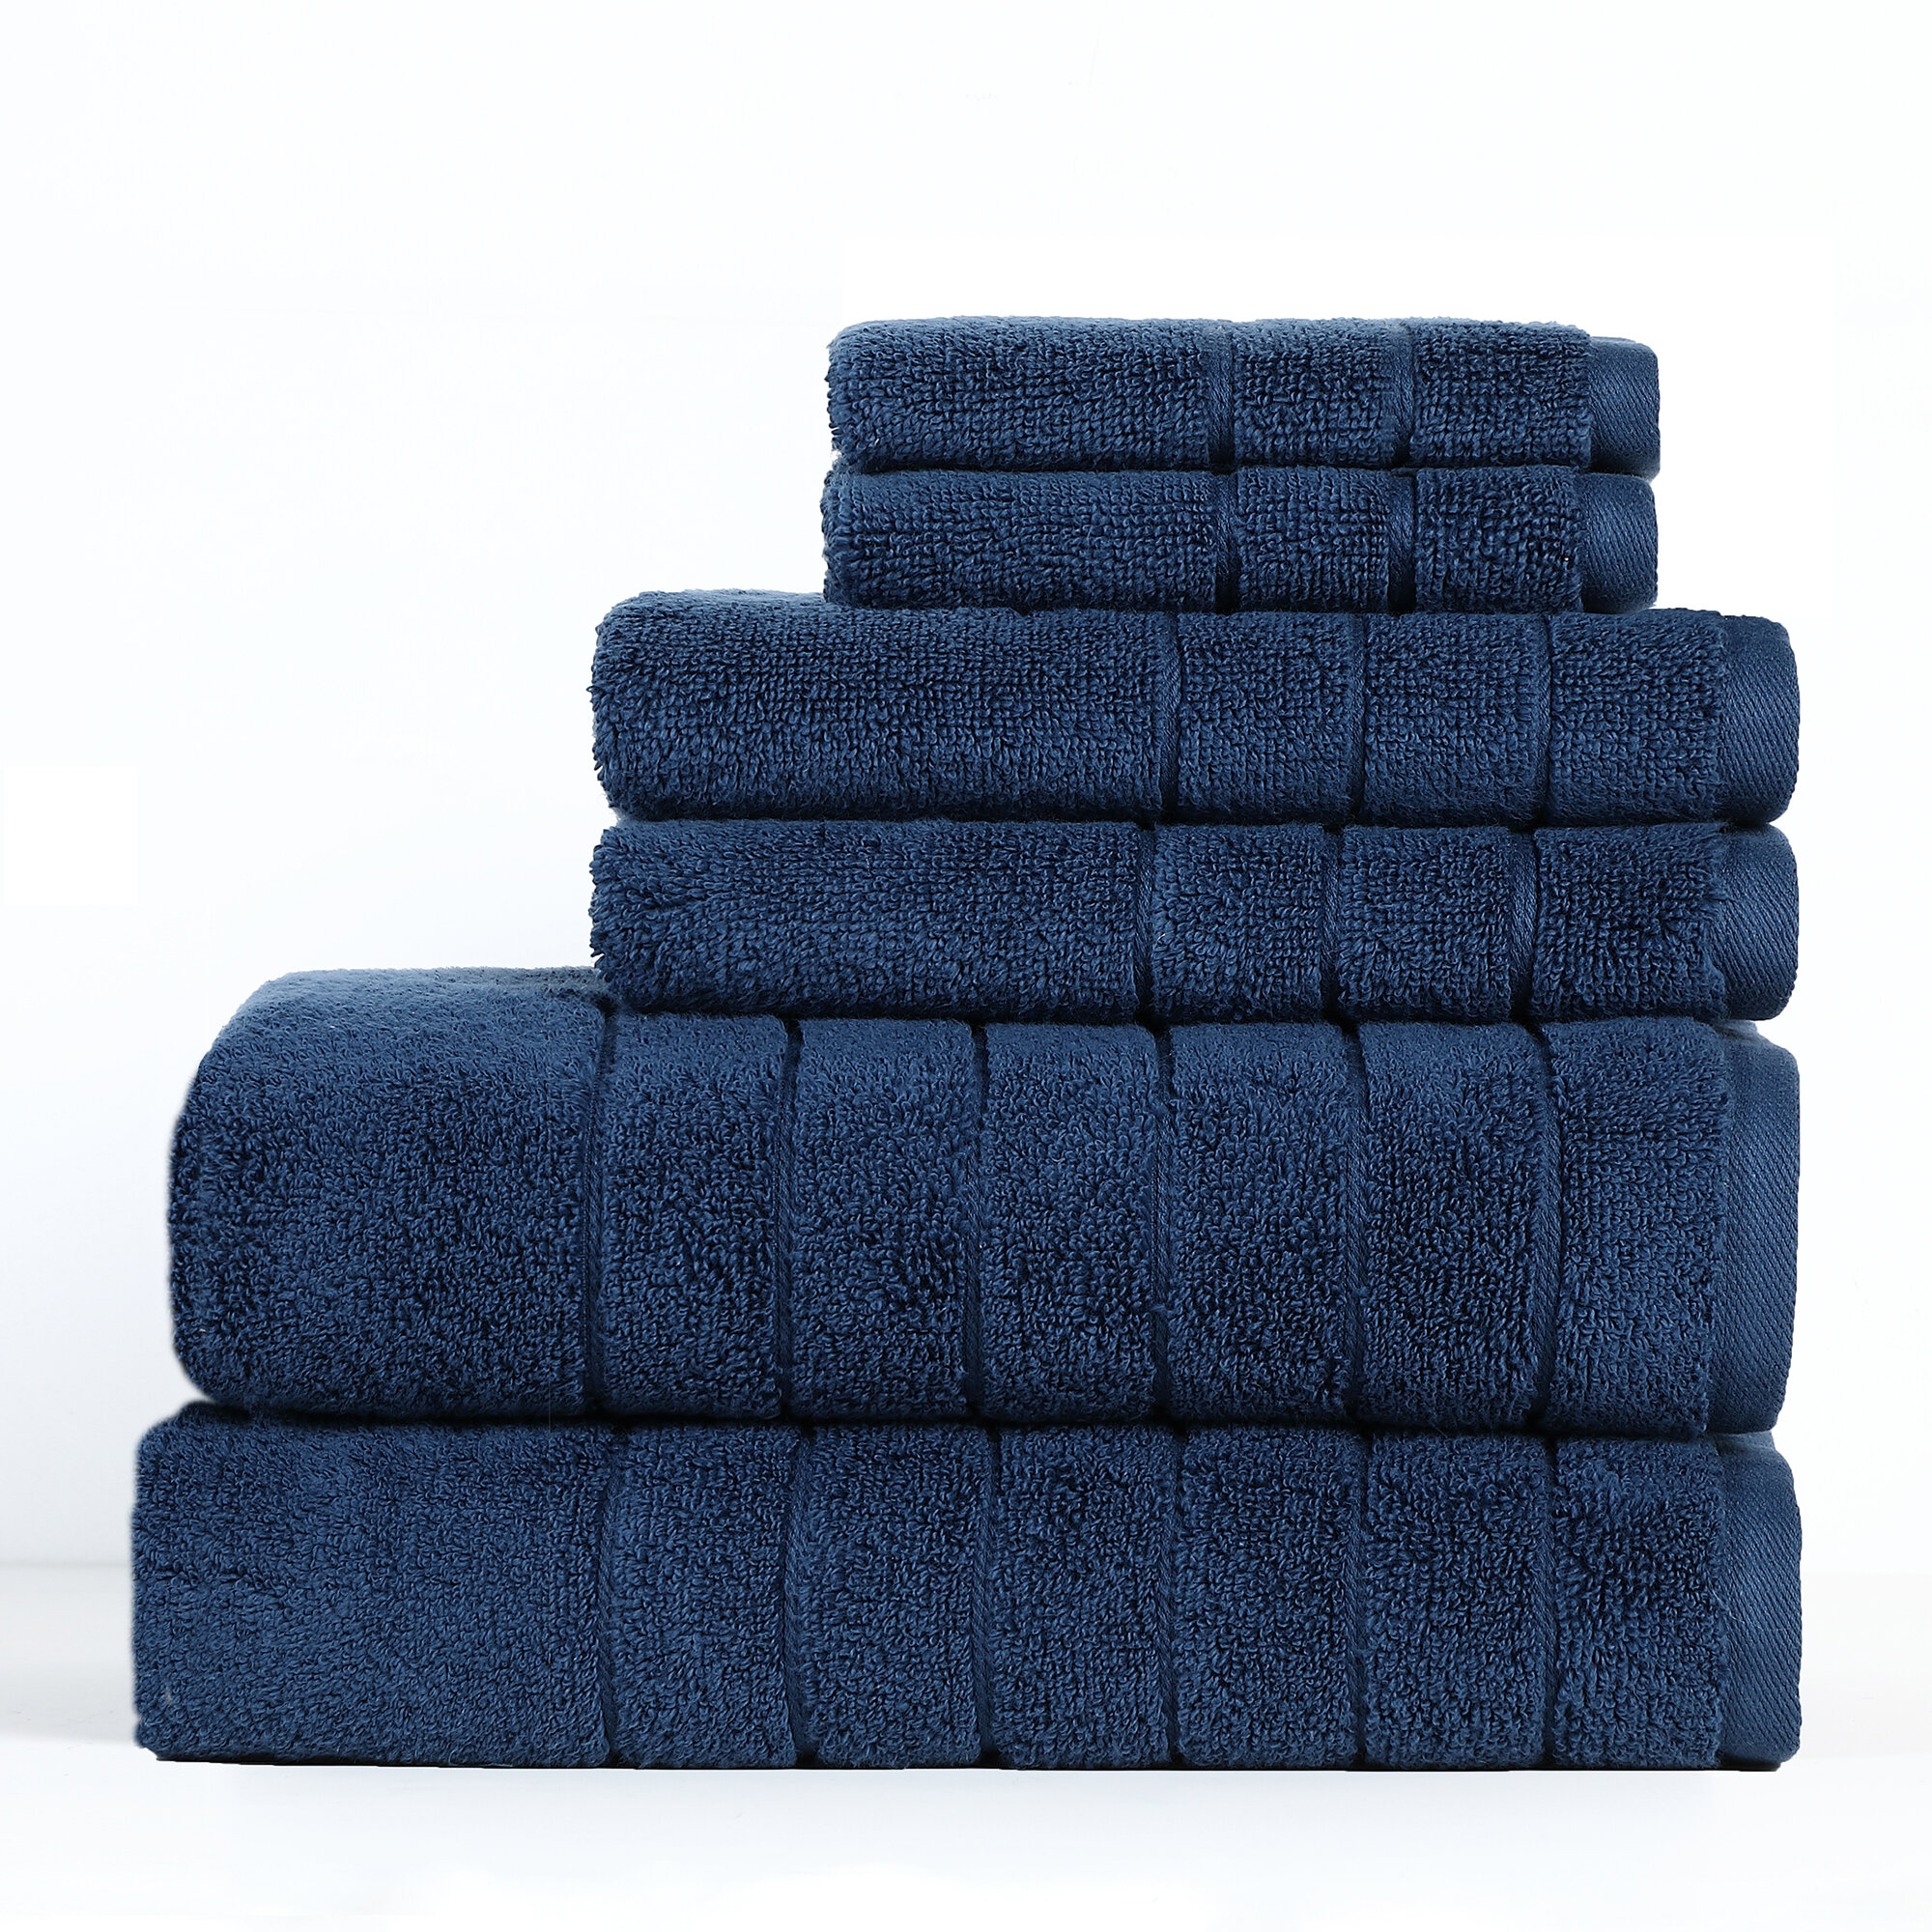 https://assets.wfcdn.com/im/02416547/compr-r85/1498/149890743/reverie-antimicrobial-towel-set-6-piece-100-cotton-towel-set.jpg